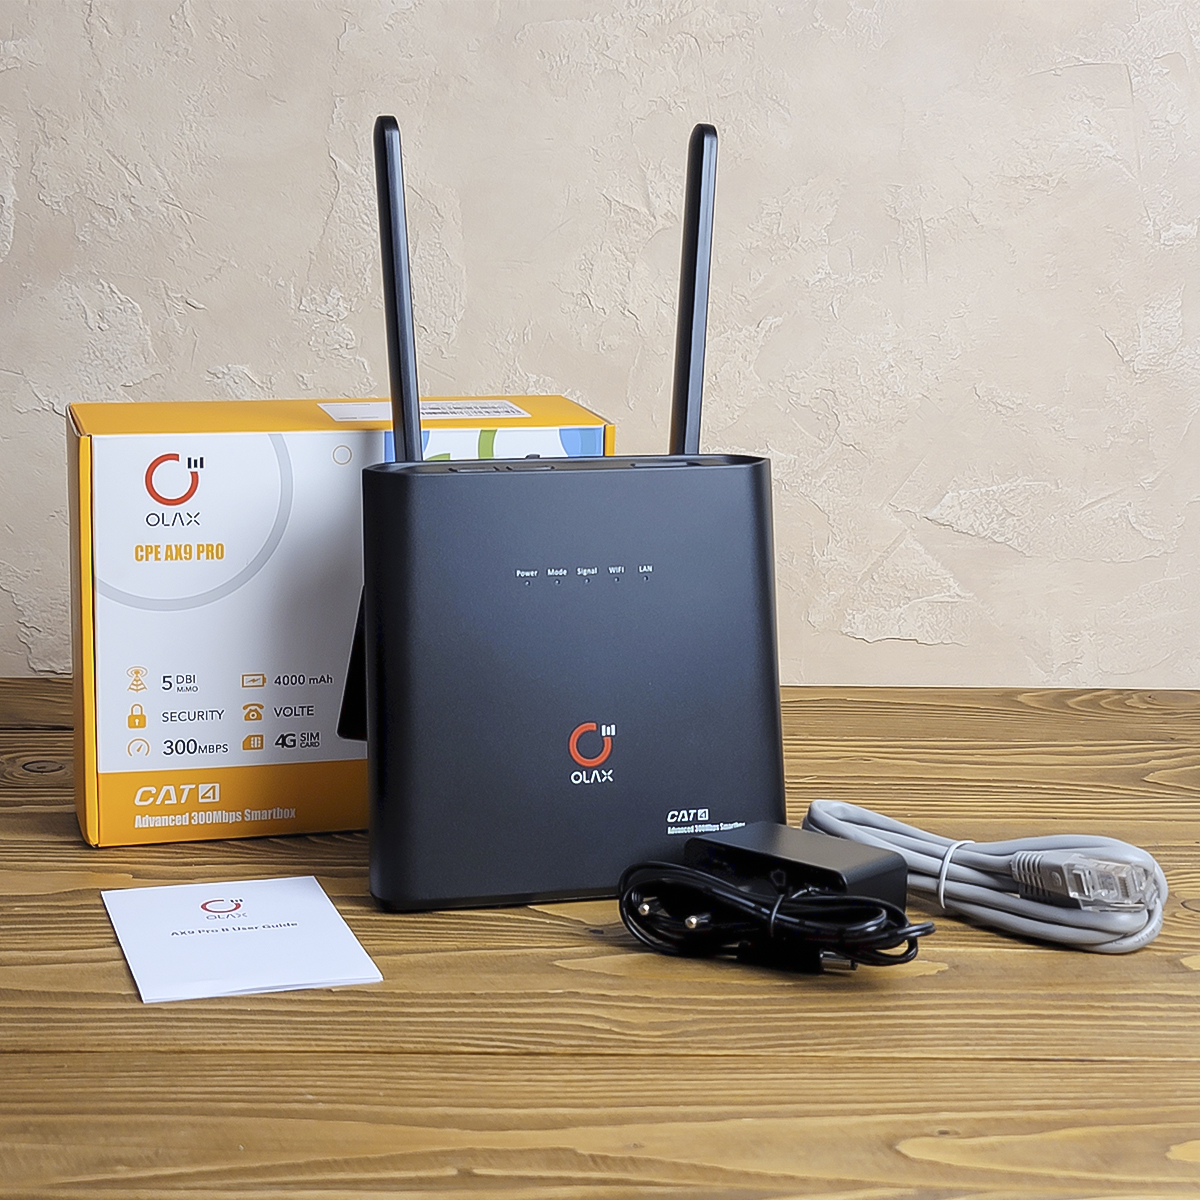  4G LTE Wi-Fi роутер Olax AX9 Pro с АКБ 4000mAh купить на marketnet.com.ua. Быстрая доставка по Украине. Вид спереди. Комплектация: роутер, 2 антенны, блок питания, кабель подключения, инструкция